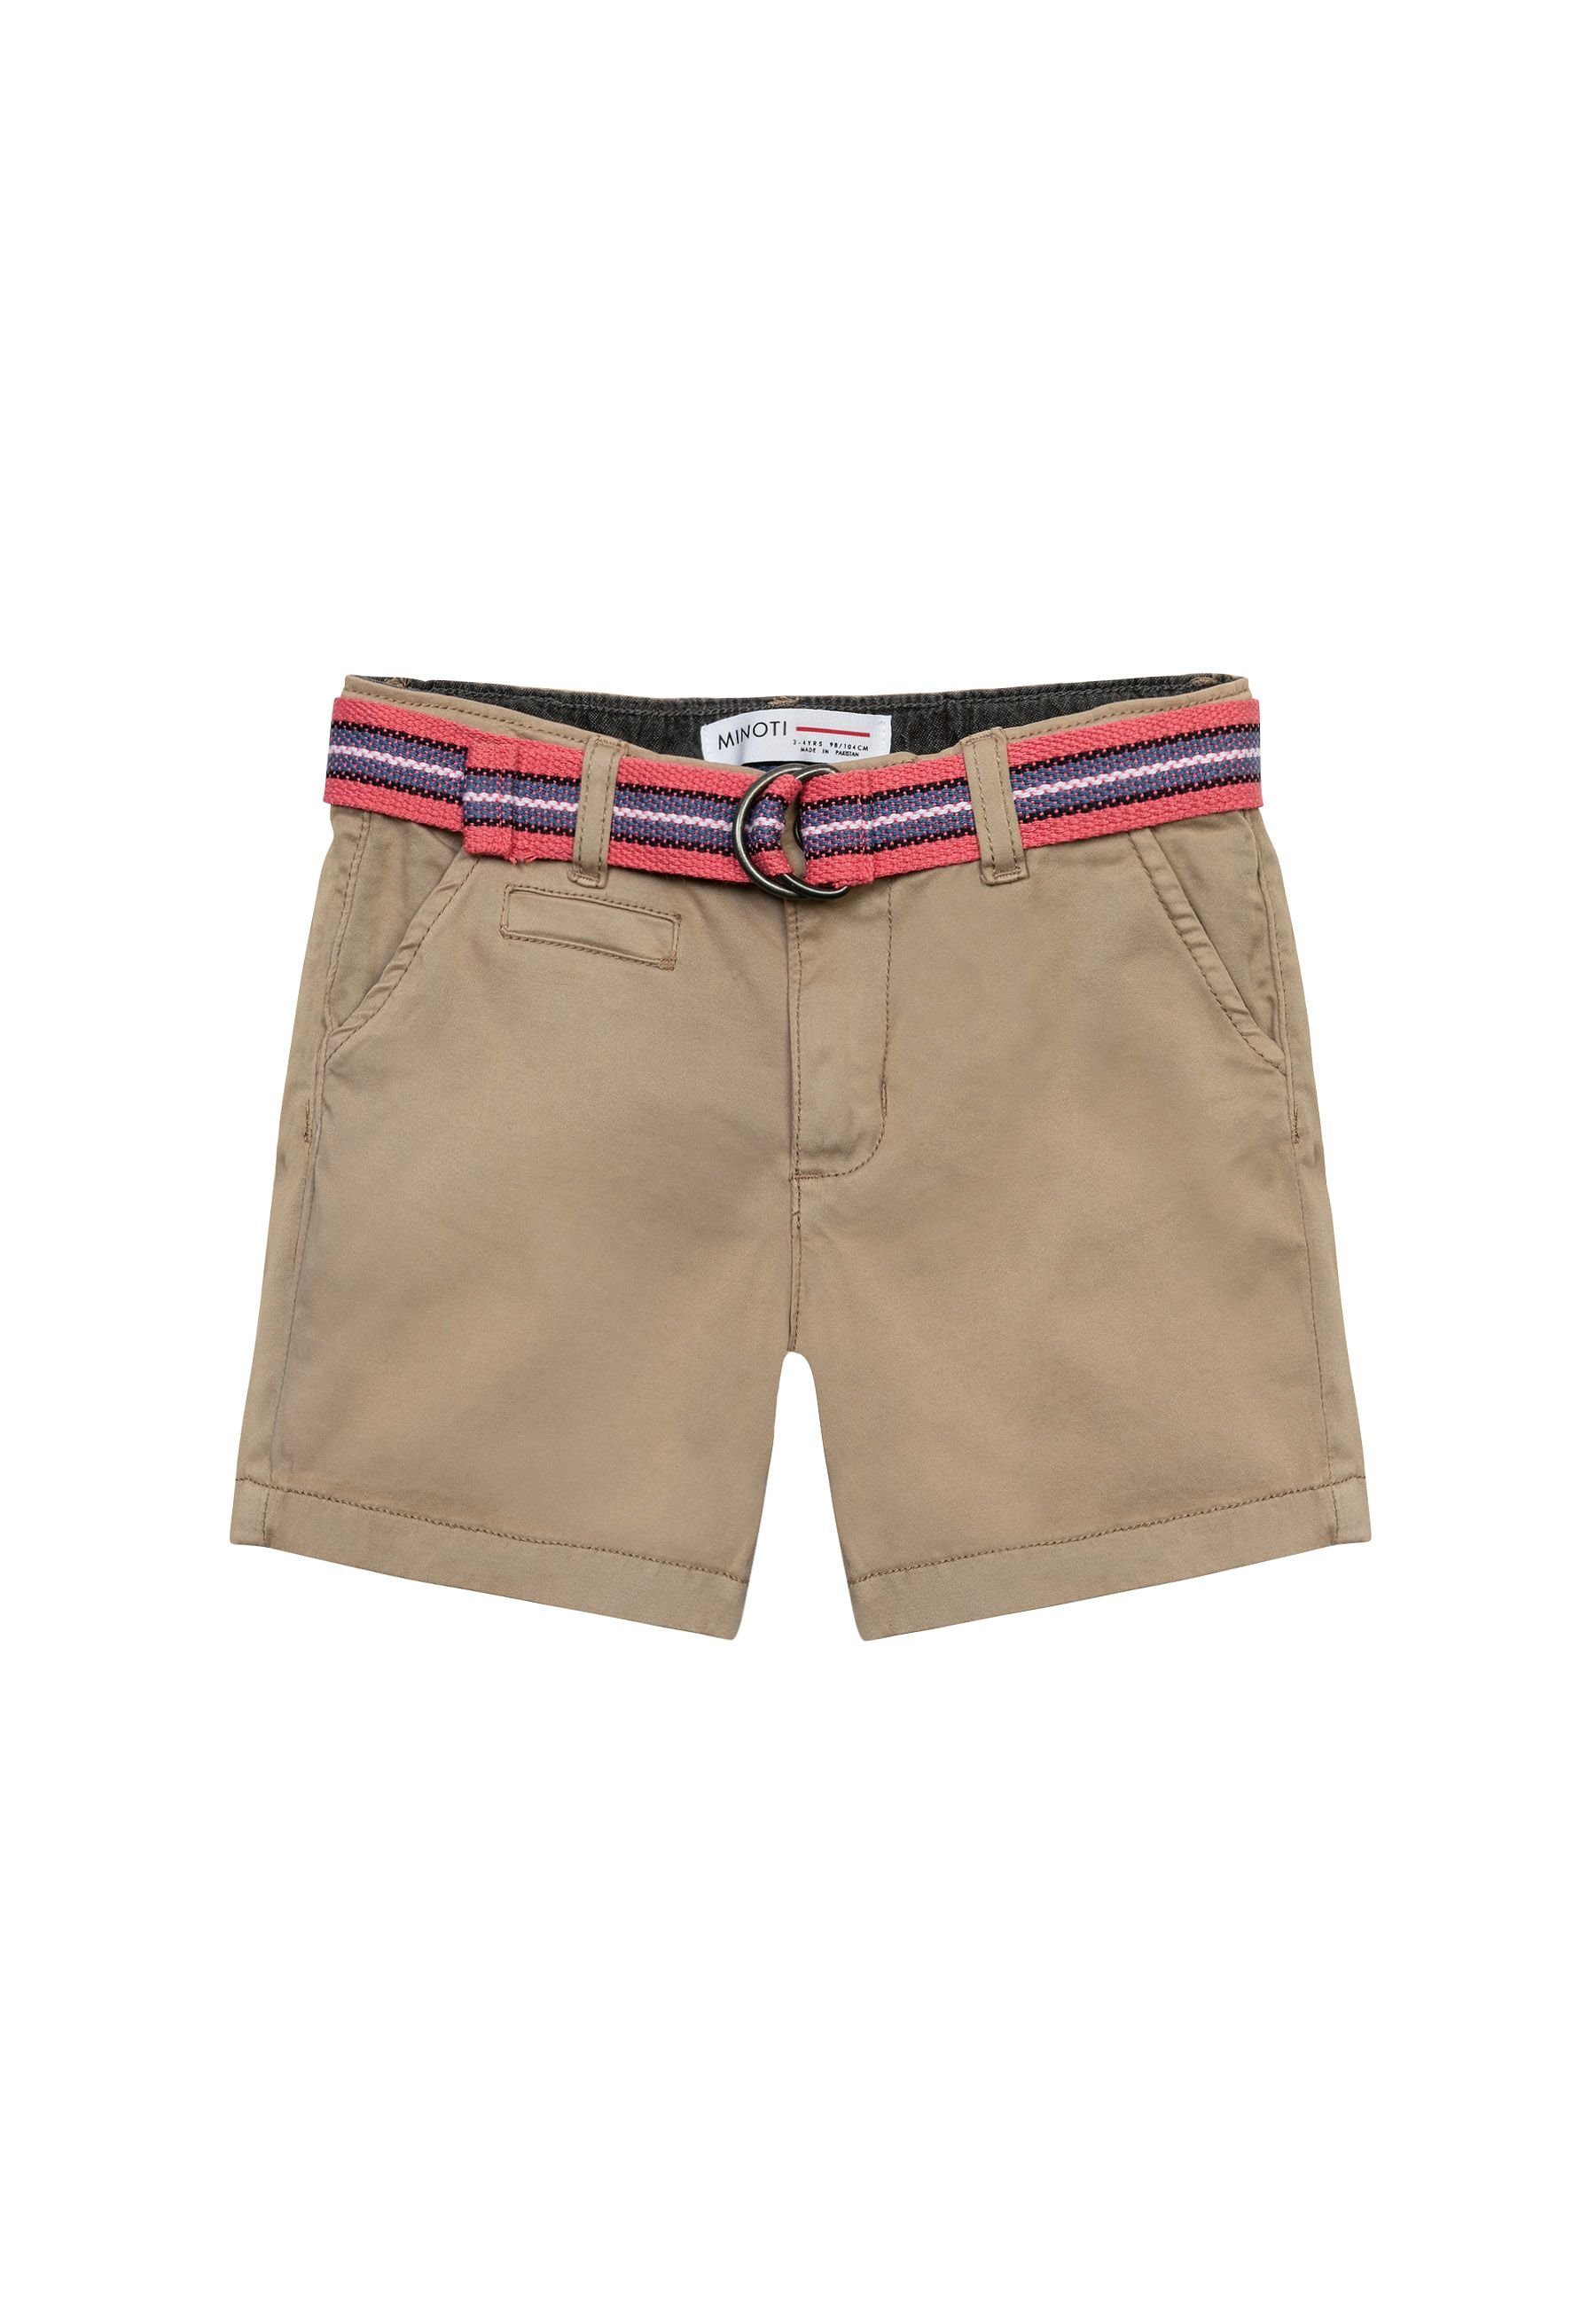 MINOTI Shorts Shorts (3y-14y)